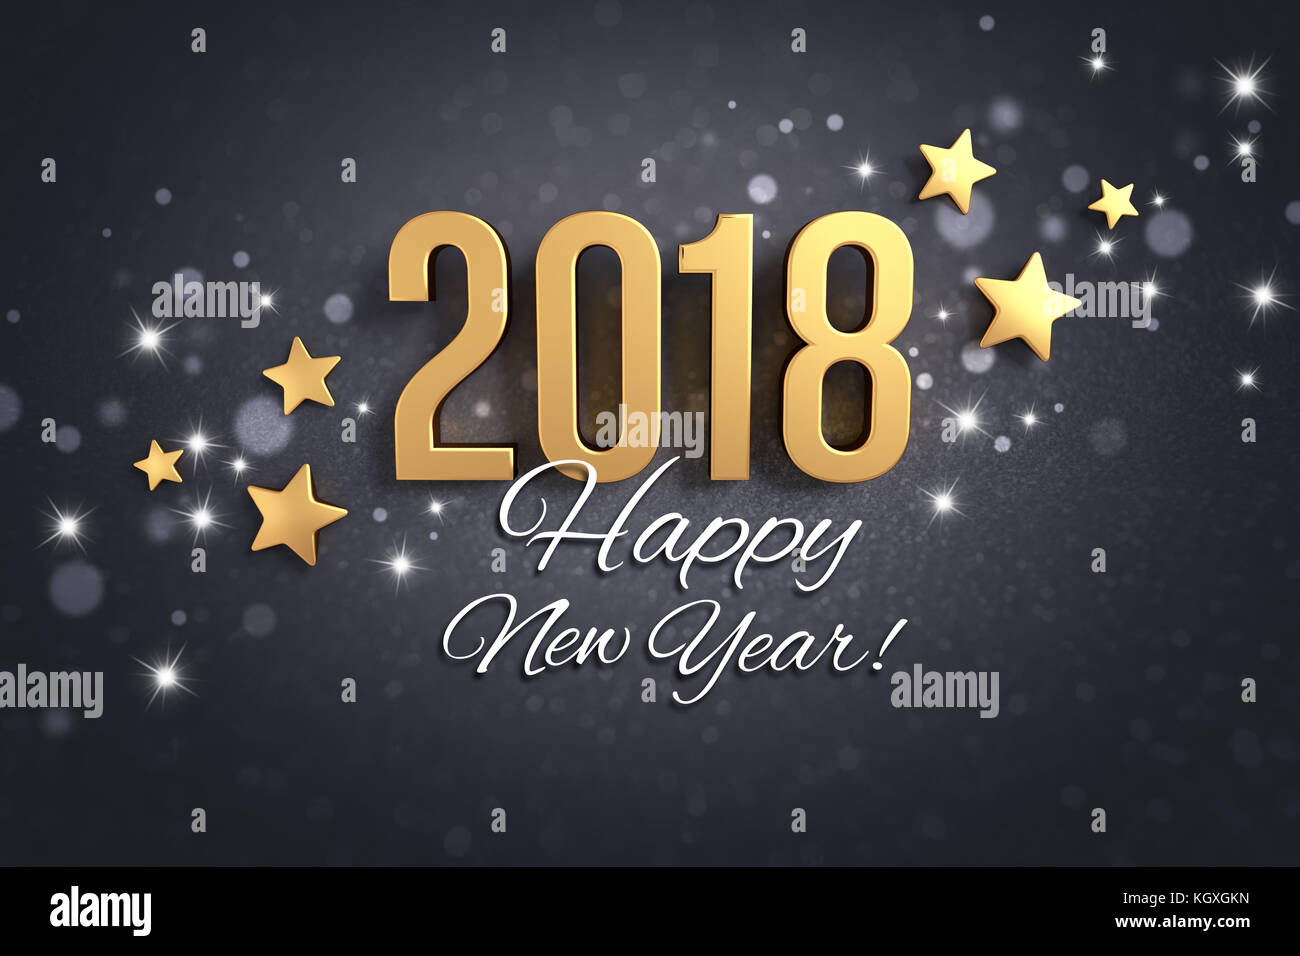 Felice anno nuovo saluti e la data 2018, color oro, su una festosa sfondo nero con brillantini e stelle - 3d illustrazione Foto Stock